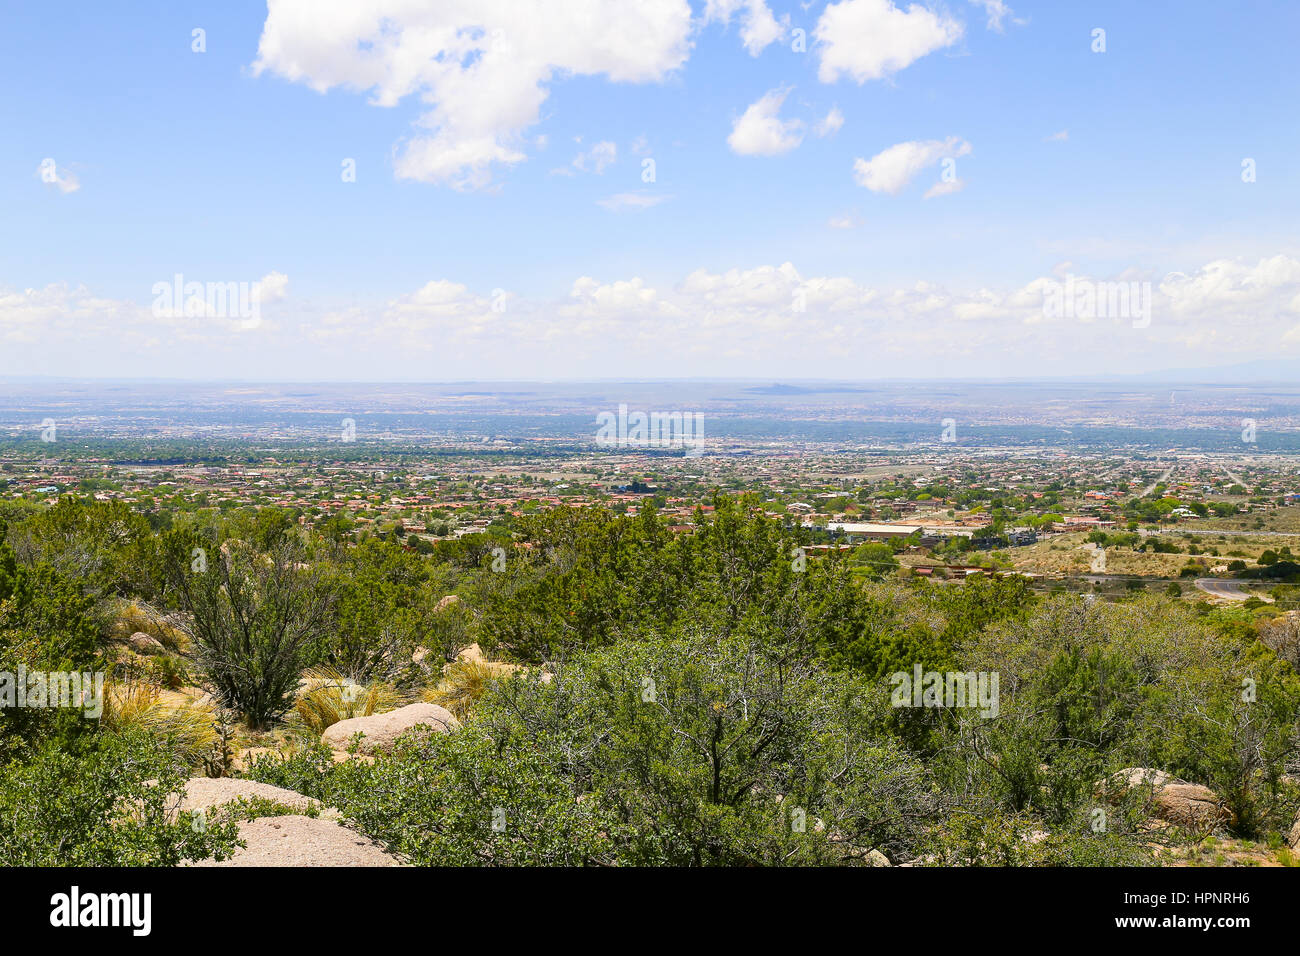 Vista panorámica de Albuquerque, EE.UU., desde el punto de partida de Sandia Peak Tramway, en primer plano, las rocas y los matorrales. Foto de stock